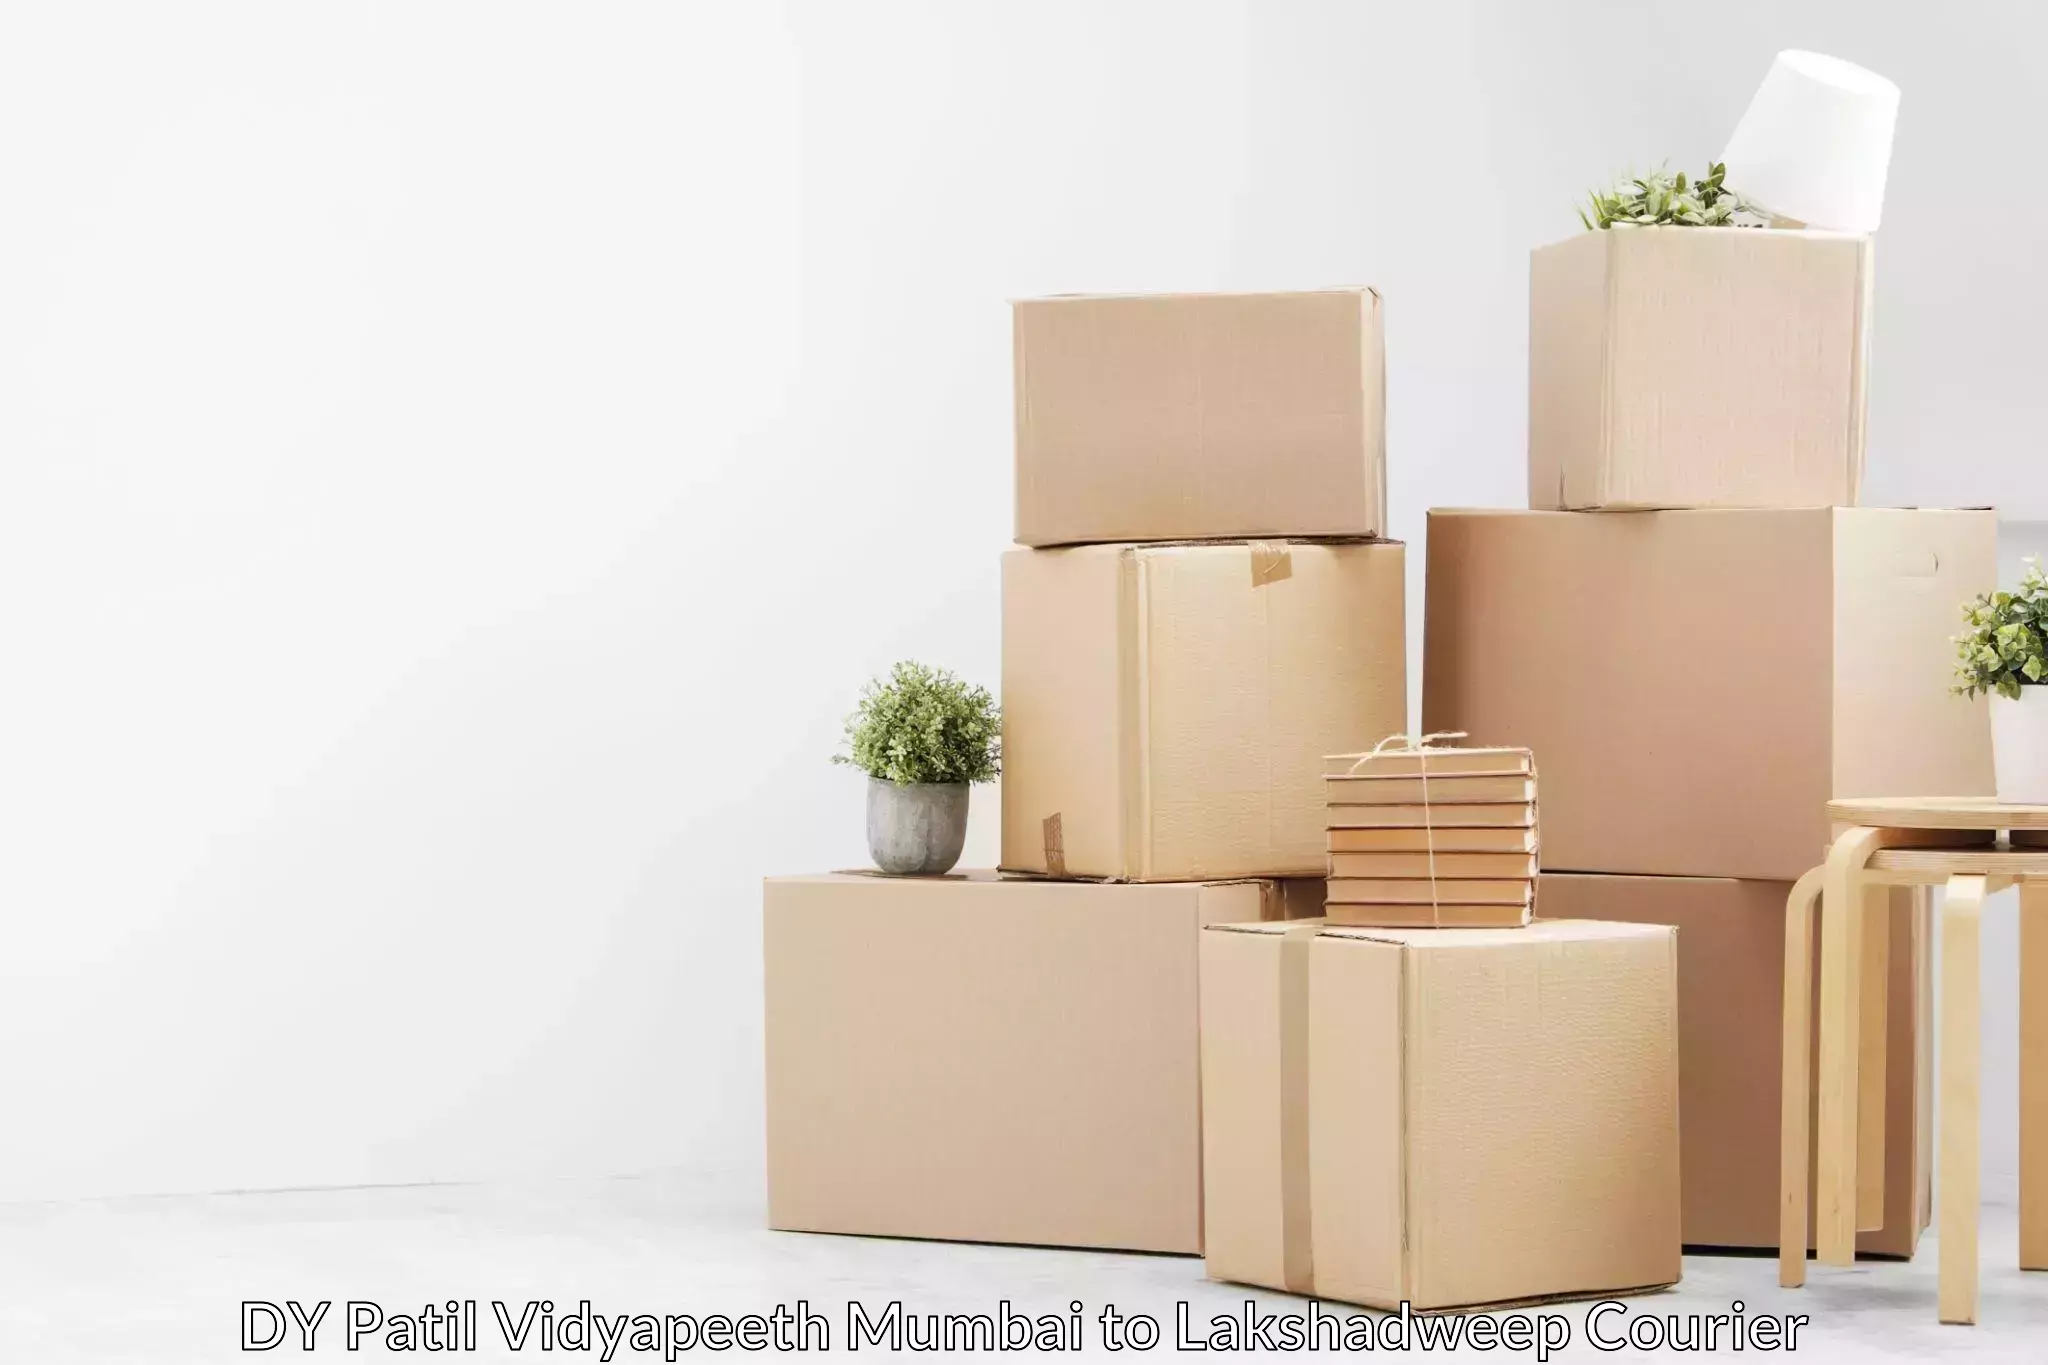 Furniture moving service DY Patil Vidyapeeth Mumbai to Lakshadweep